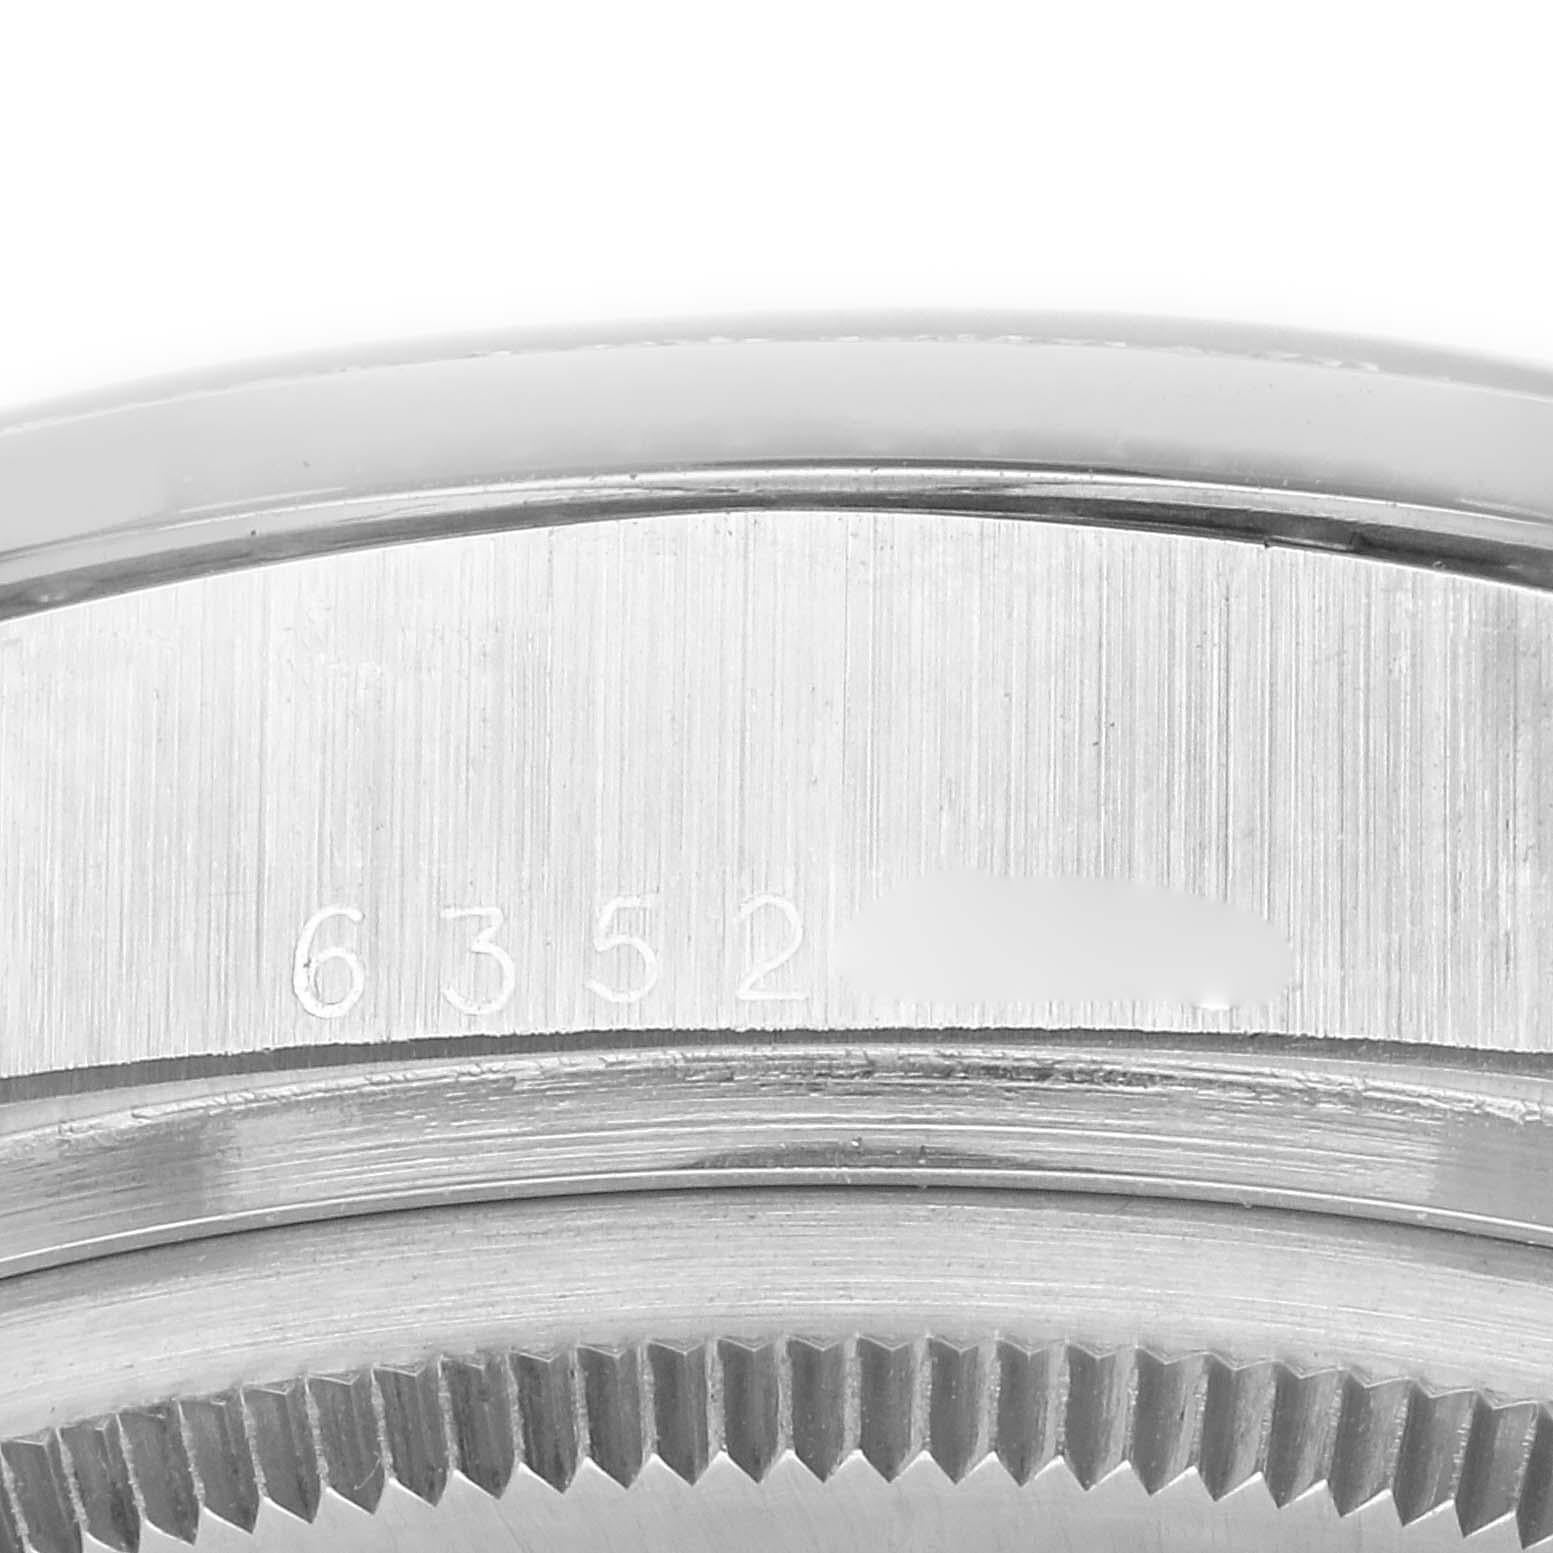 Rolex President Day-Date Montre homme cadran argenté platine diamant 18046. Mouvement à remontage automatique certifié officiellement chronomètre avec fonction de date rapide. Boîtier oyster en platine de 36,0 mm de diamètre. Logo Rolex sur une